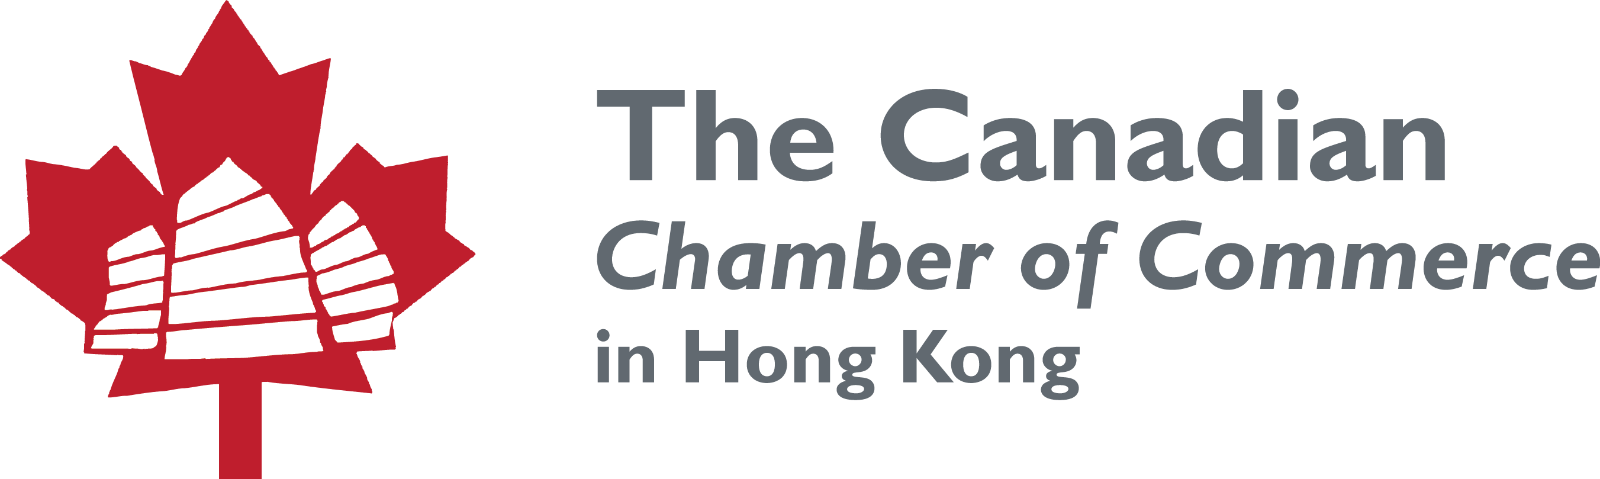 Canadian Chamber company logo.